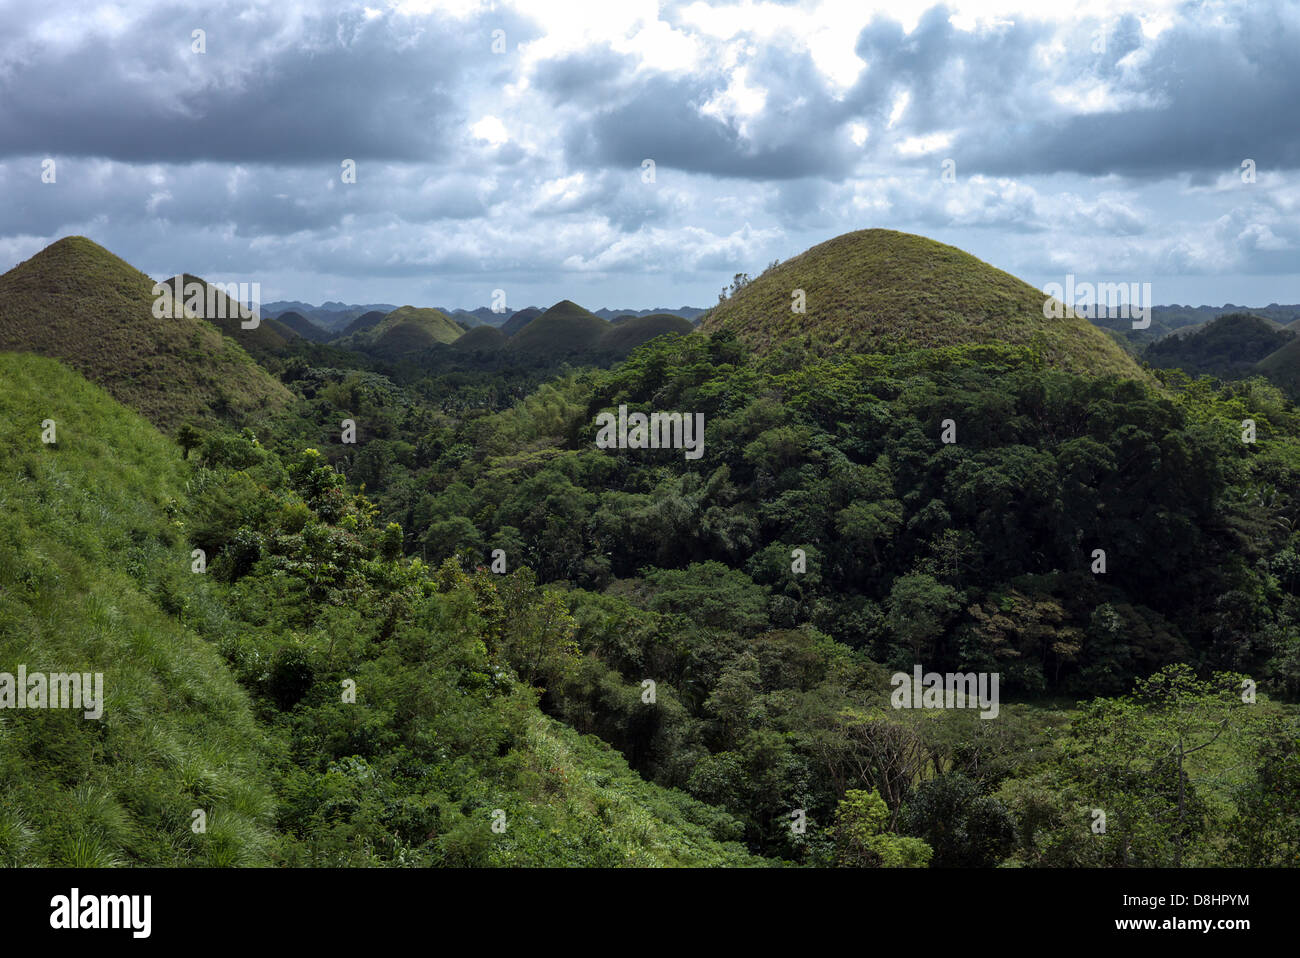 Las Colinas de Chocolate formación geológica de la provincia de Bohol, Filipinas. Foto de stock